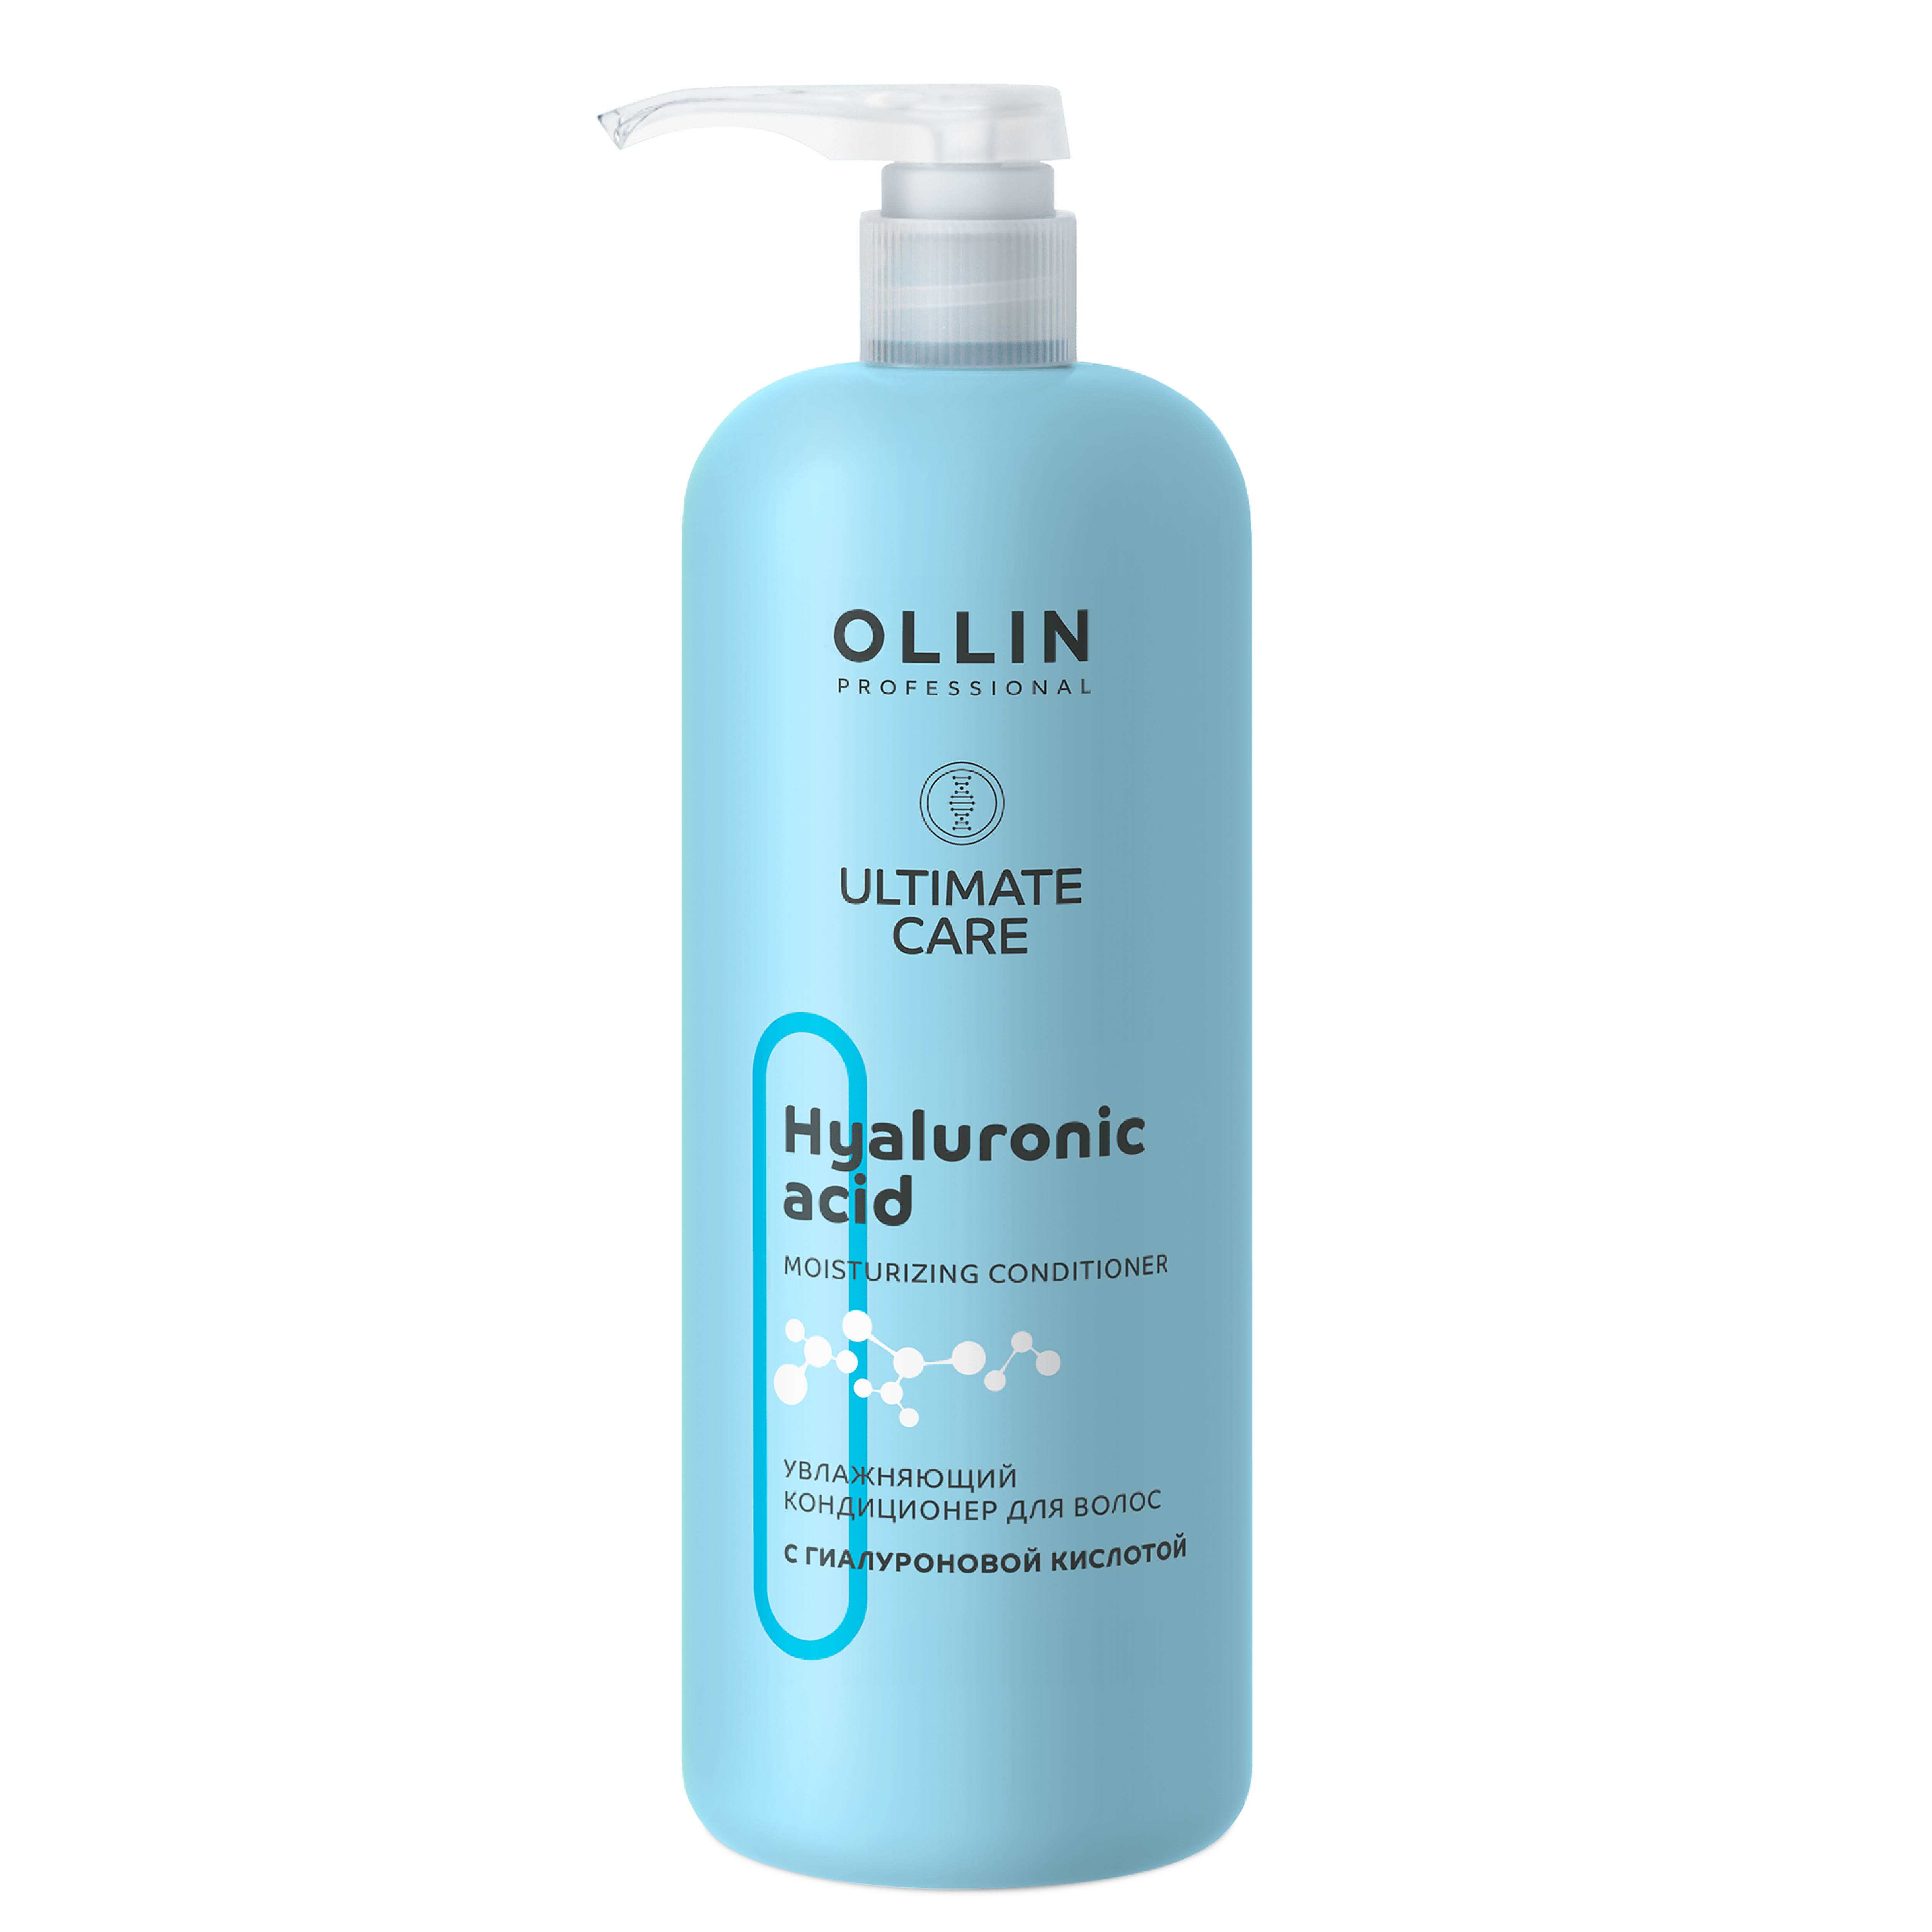 Кондиционер Ollin ultimate care для увлажнения волос с гиалуроновой кислотой 1000 мл - фото 1